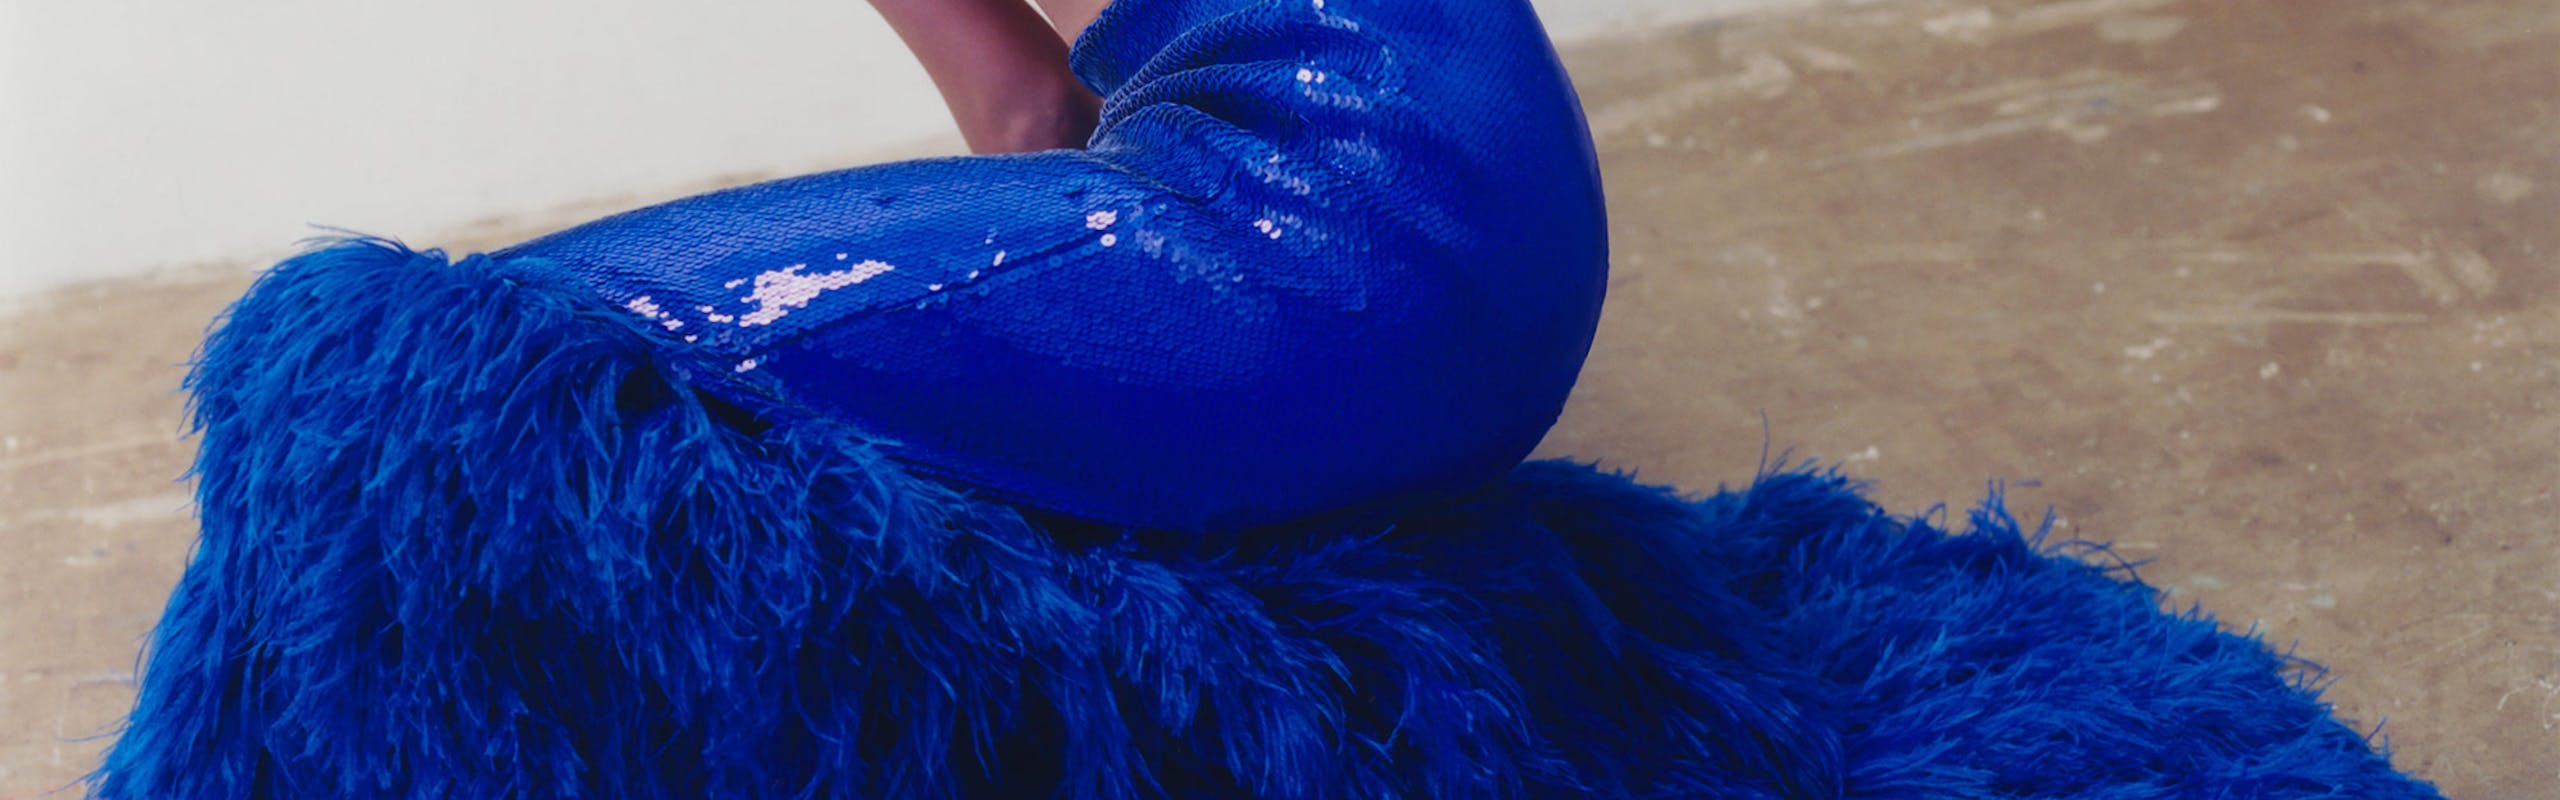 Woman wears blue feathery skirt.